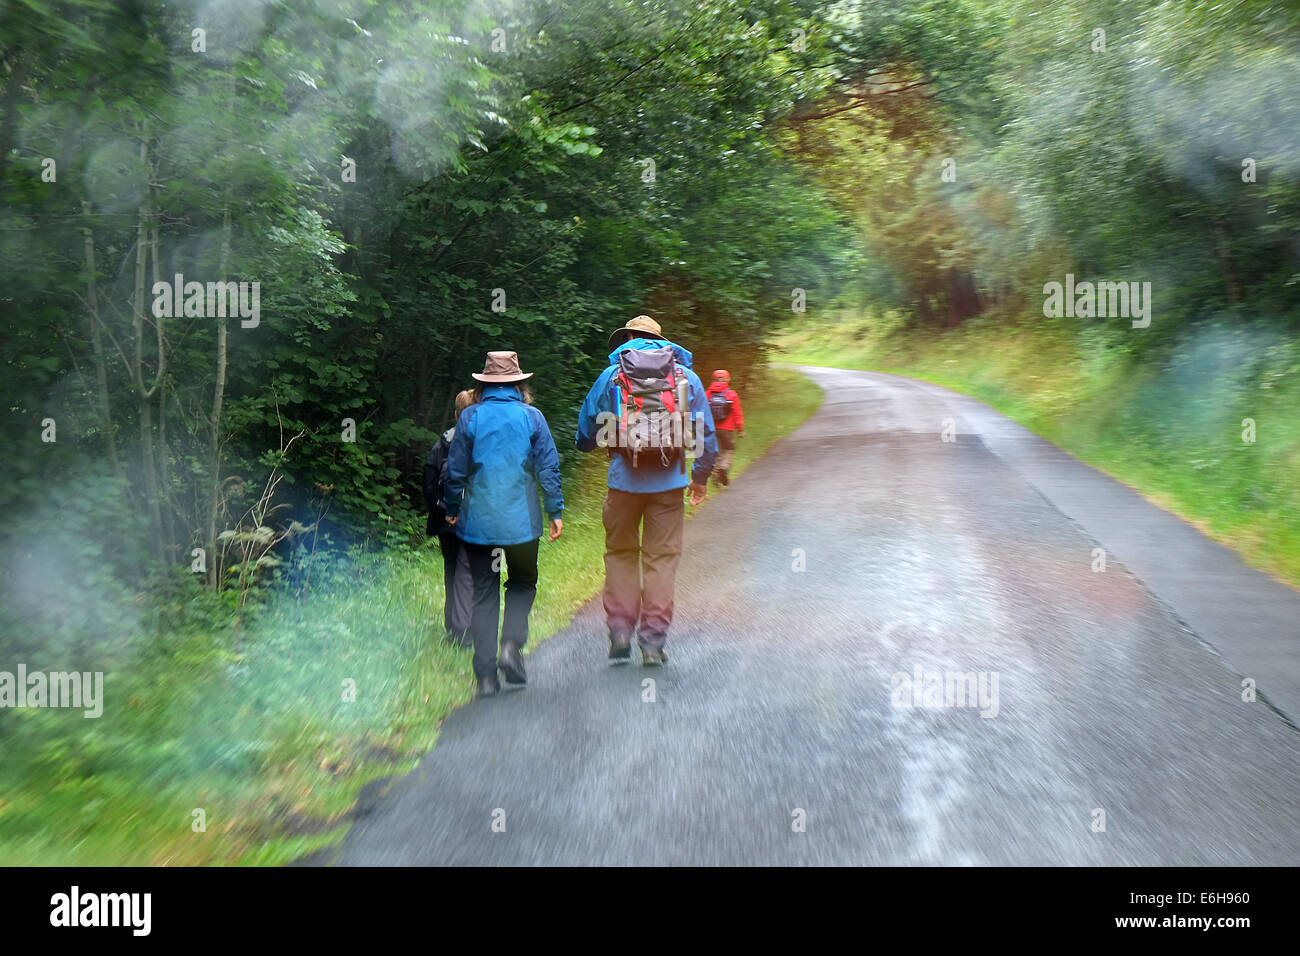 Gruppo di persone in condizioni di bagnato i vestiti e la pioggia passeggiate nel bosco. Foto Stock